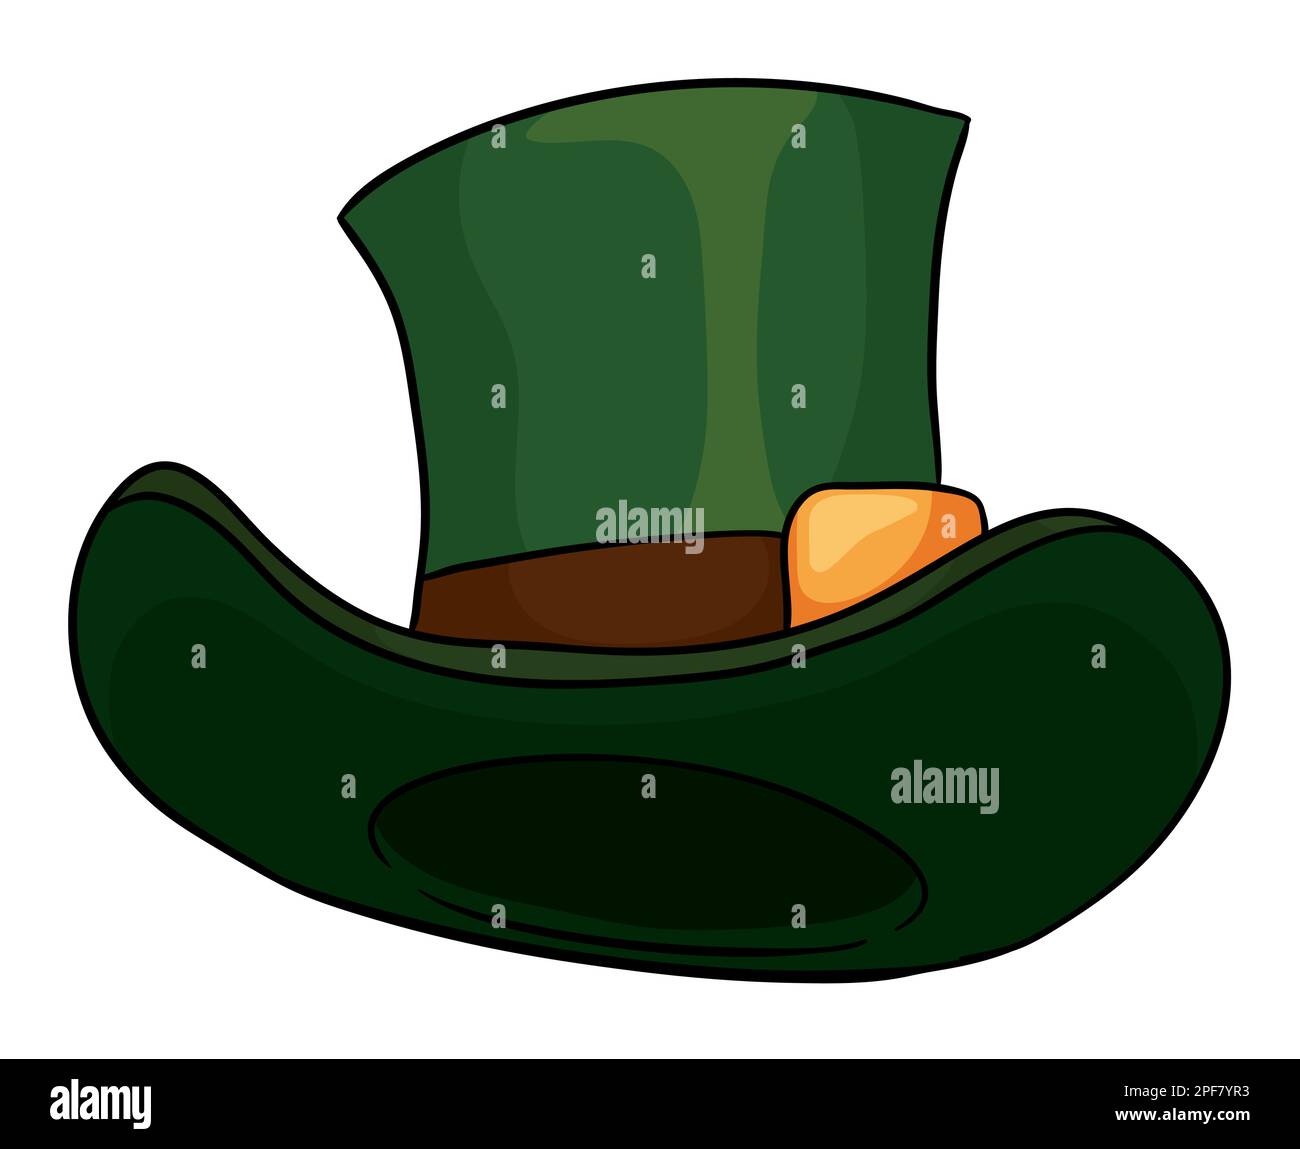 Elegante cappello verde con fascia marrone e fibbia dorata. Design in vista dal basso e stile cartoon con contorni. Illustrazione Vettoriale